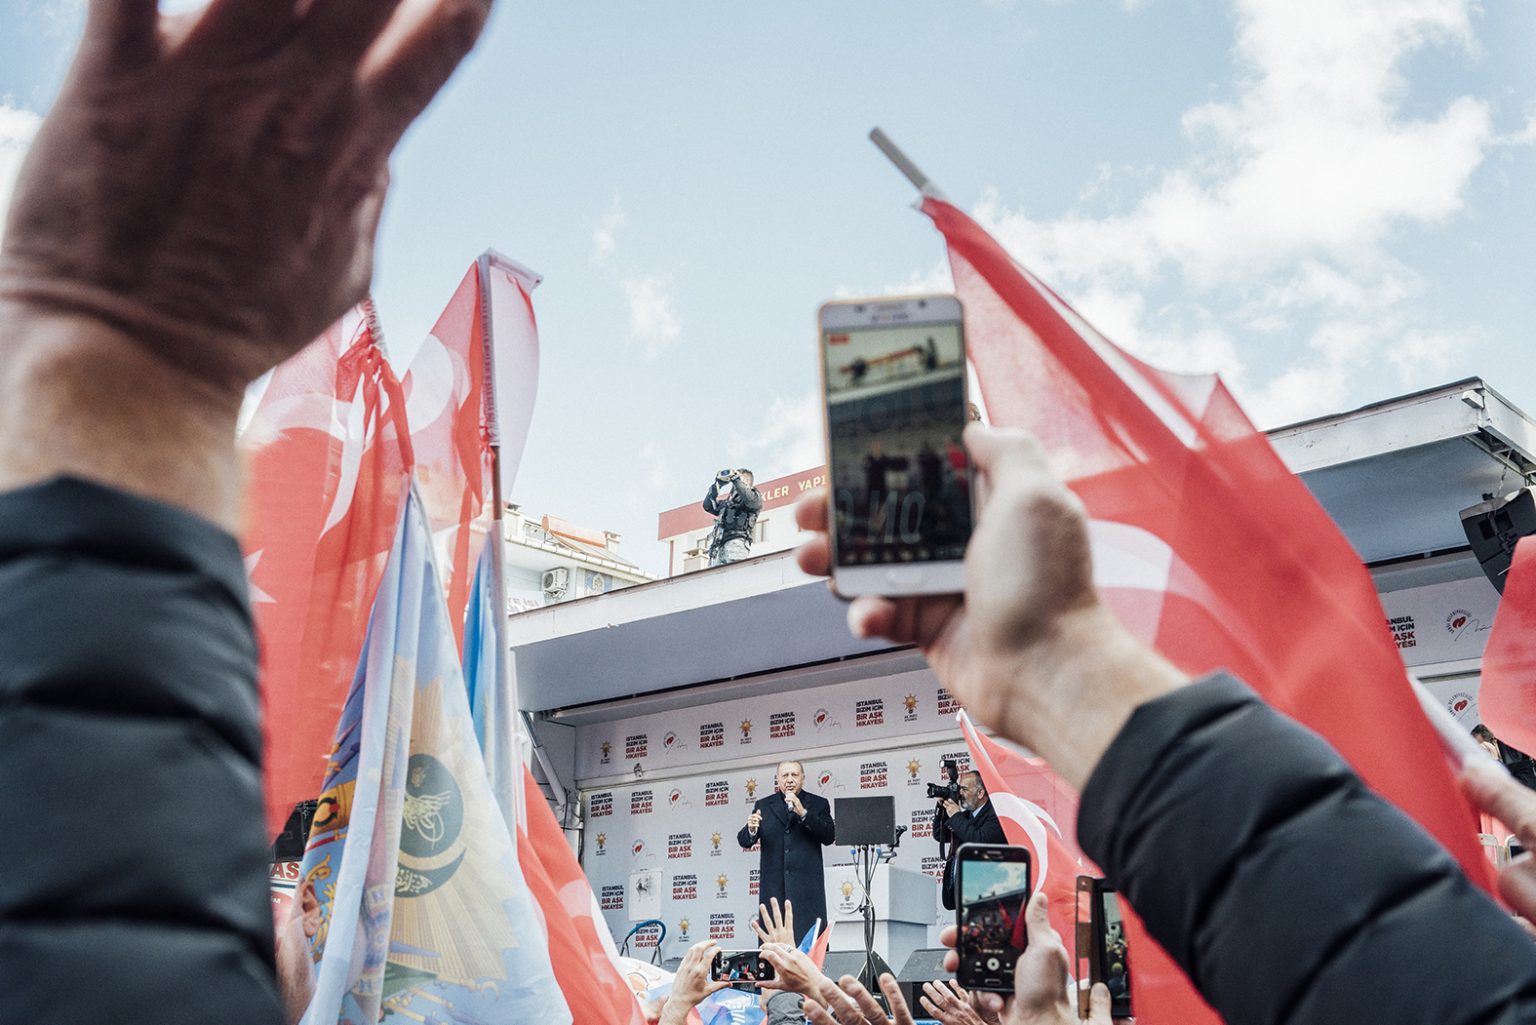 TURKEY. Istanbul, March 2019 – President Erdogan gives a speech during his rally campaign in support of his candidates for the municipal elections.

TURCHIA. Istanbul, March 2019 – Il presidente Erdogan tiene un discorso durante la campagna elettorale a sostegno dei suoi candidati alle elezioni municipali.